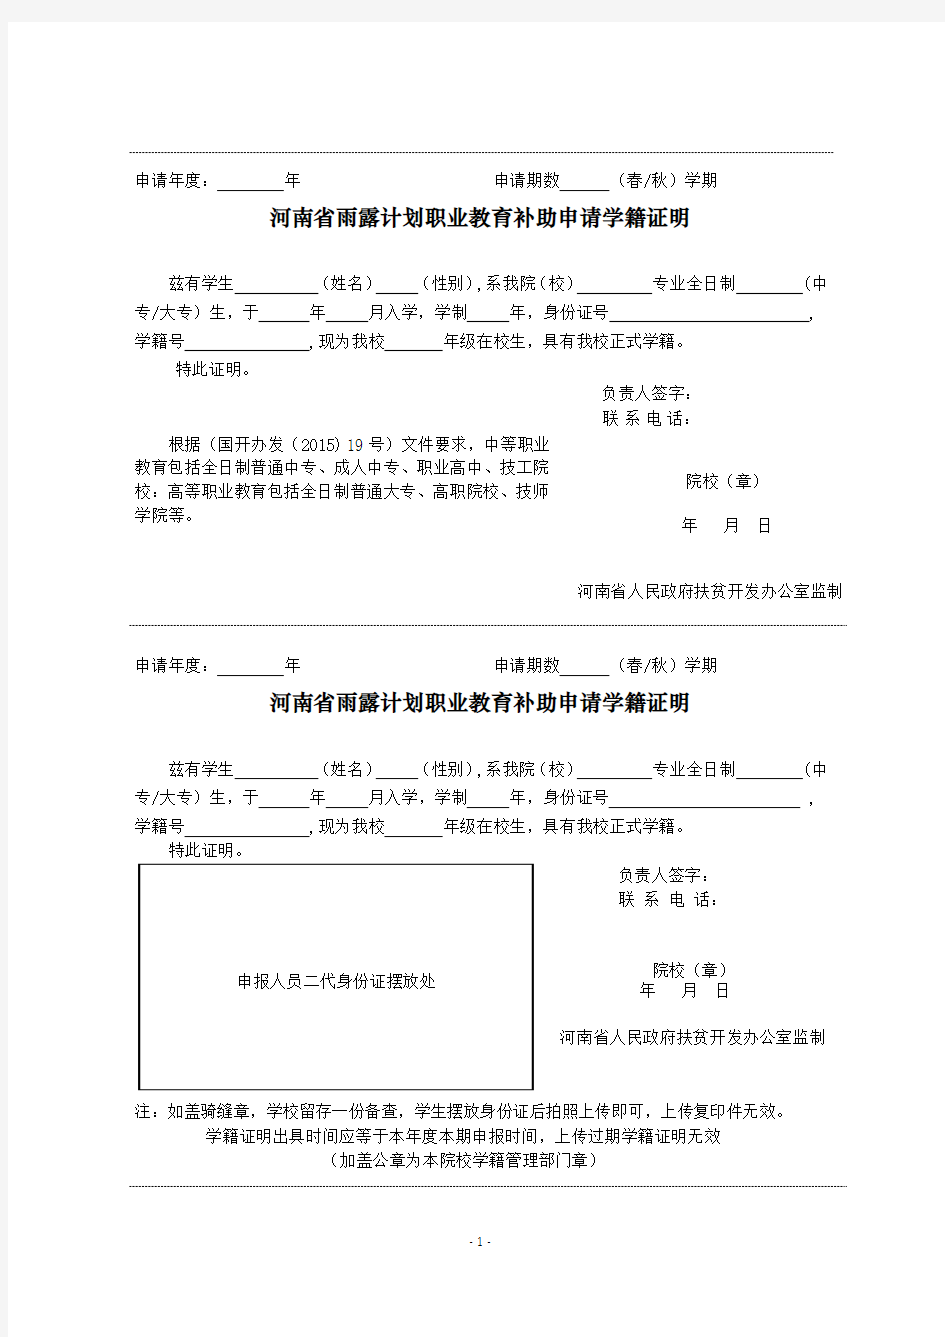 河南省雨露计划职业教育补助申请学籍证明